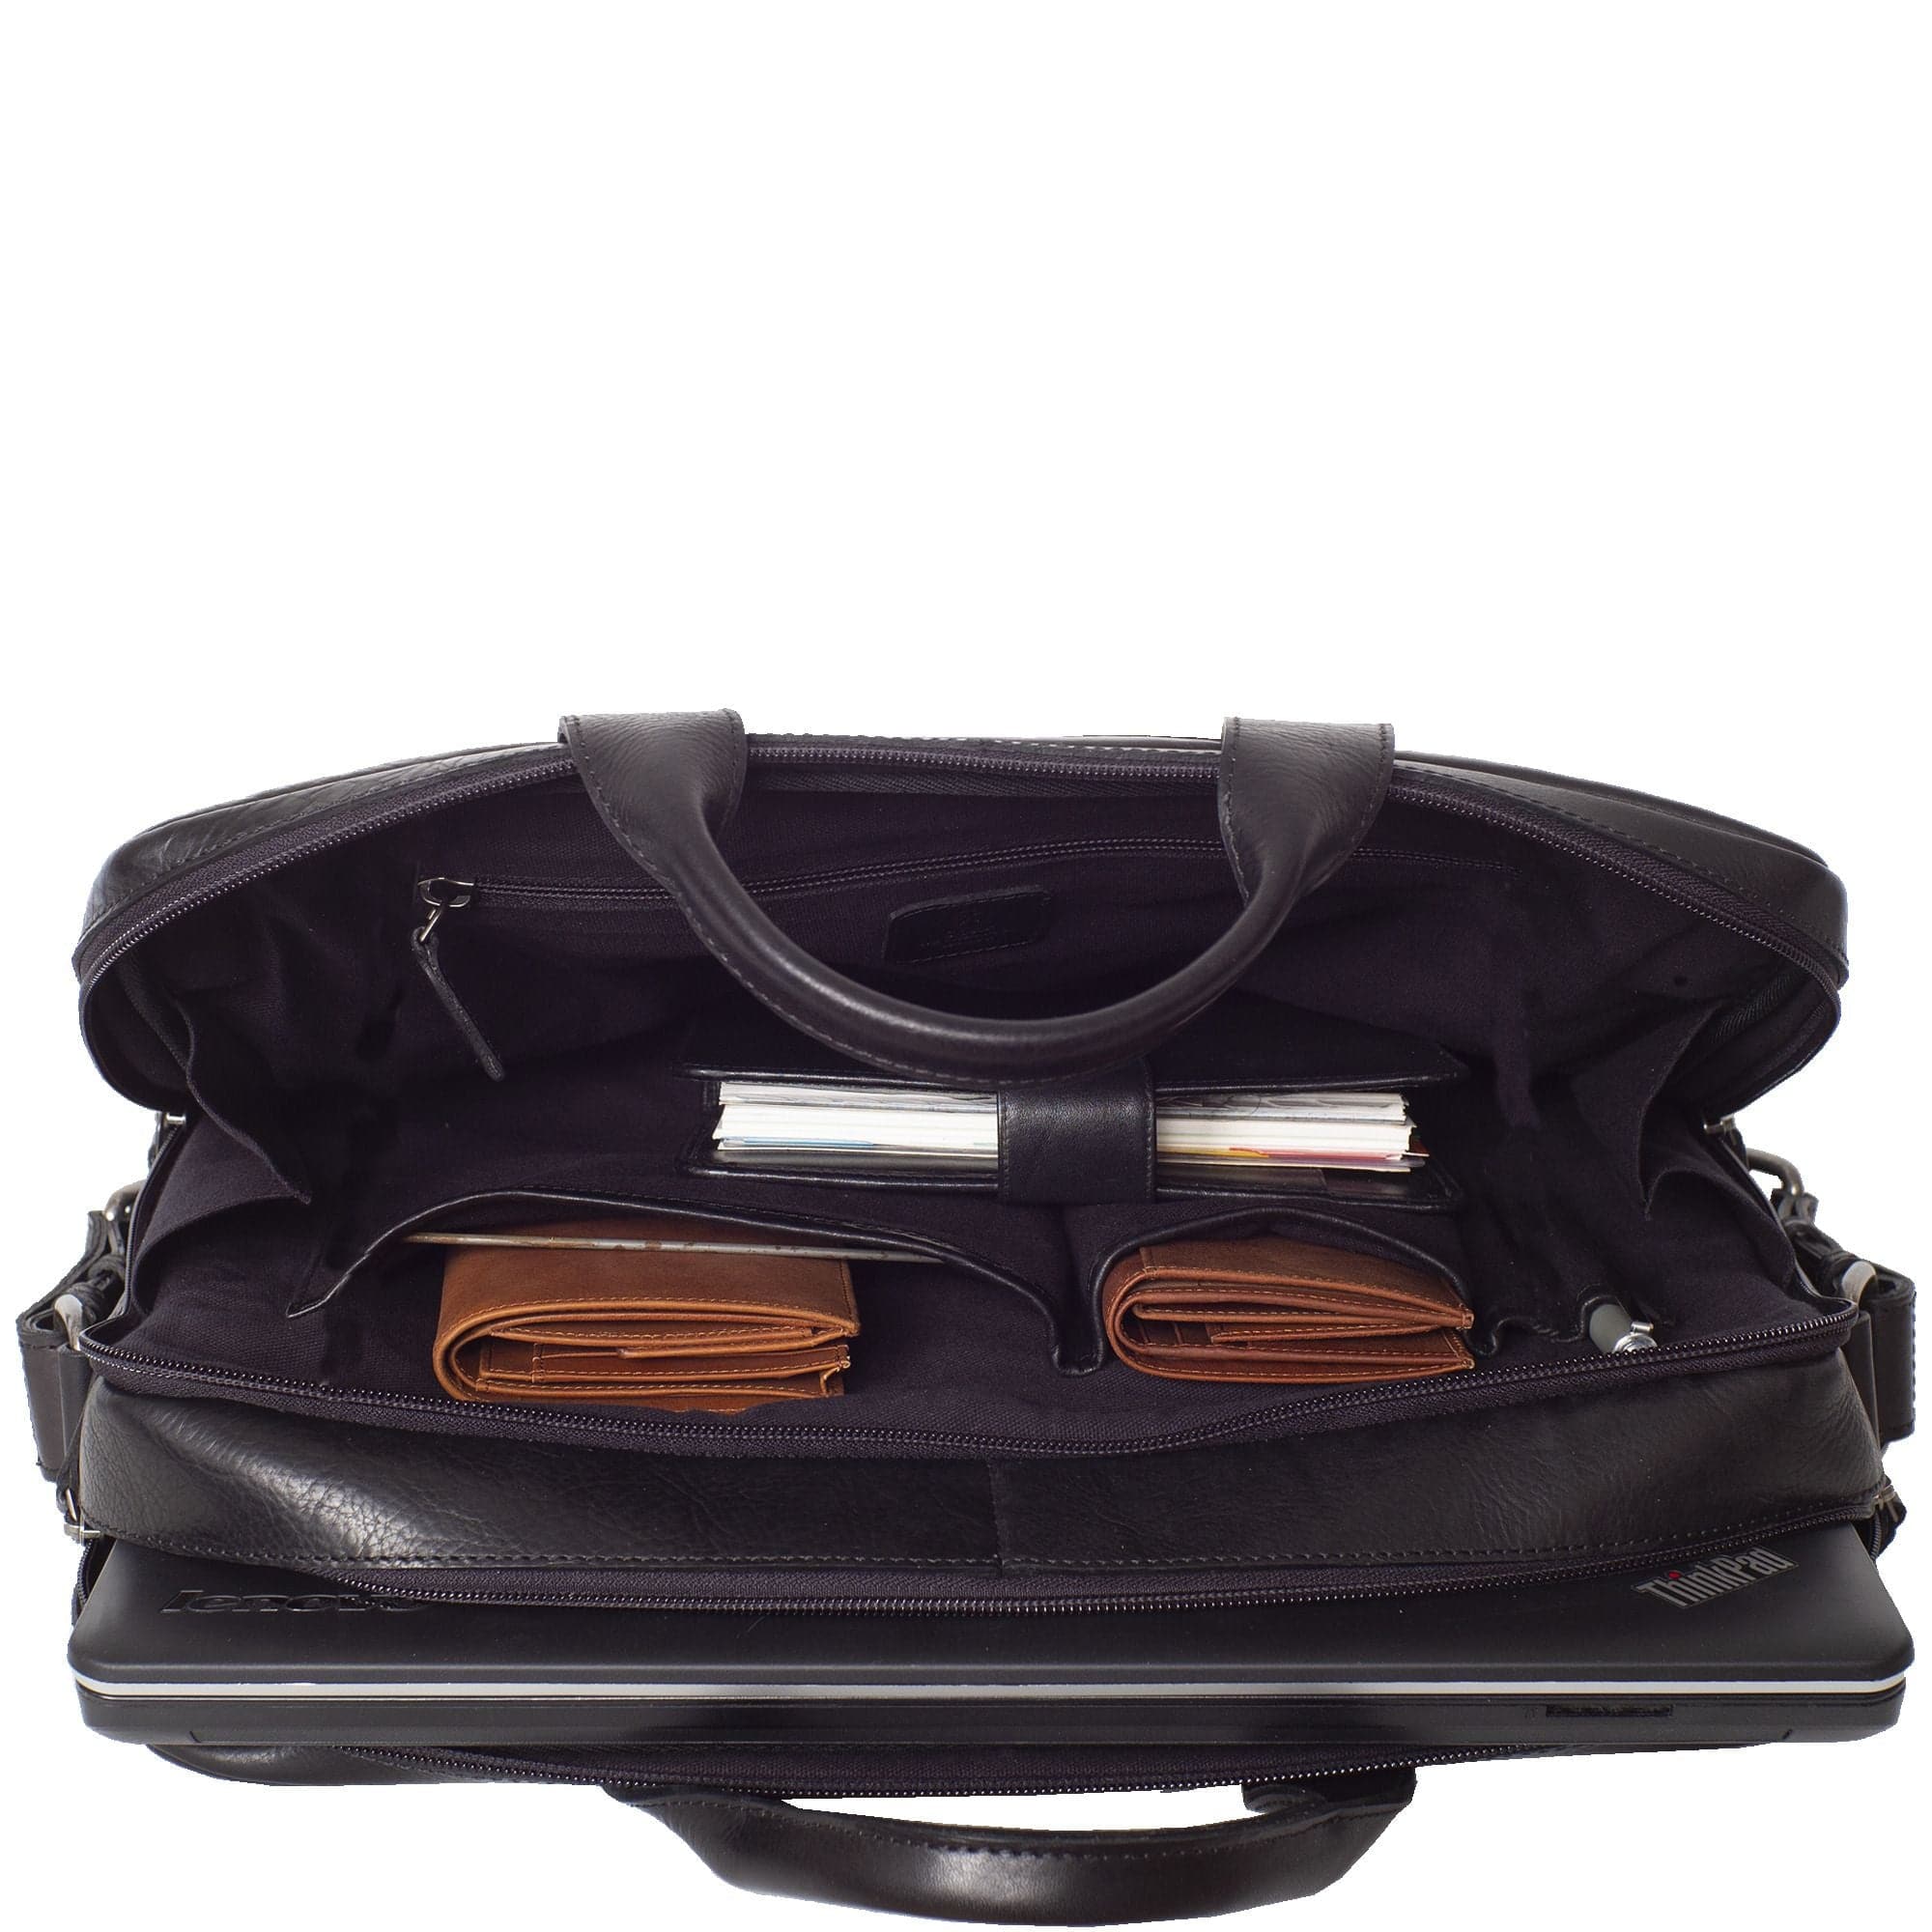 Laptoptasche Businesstasche 17 Zoll Leder schwarz 2 große Fächer